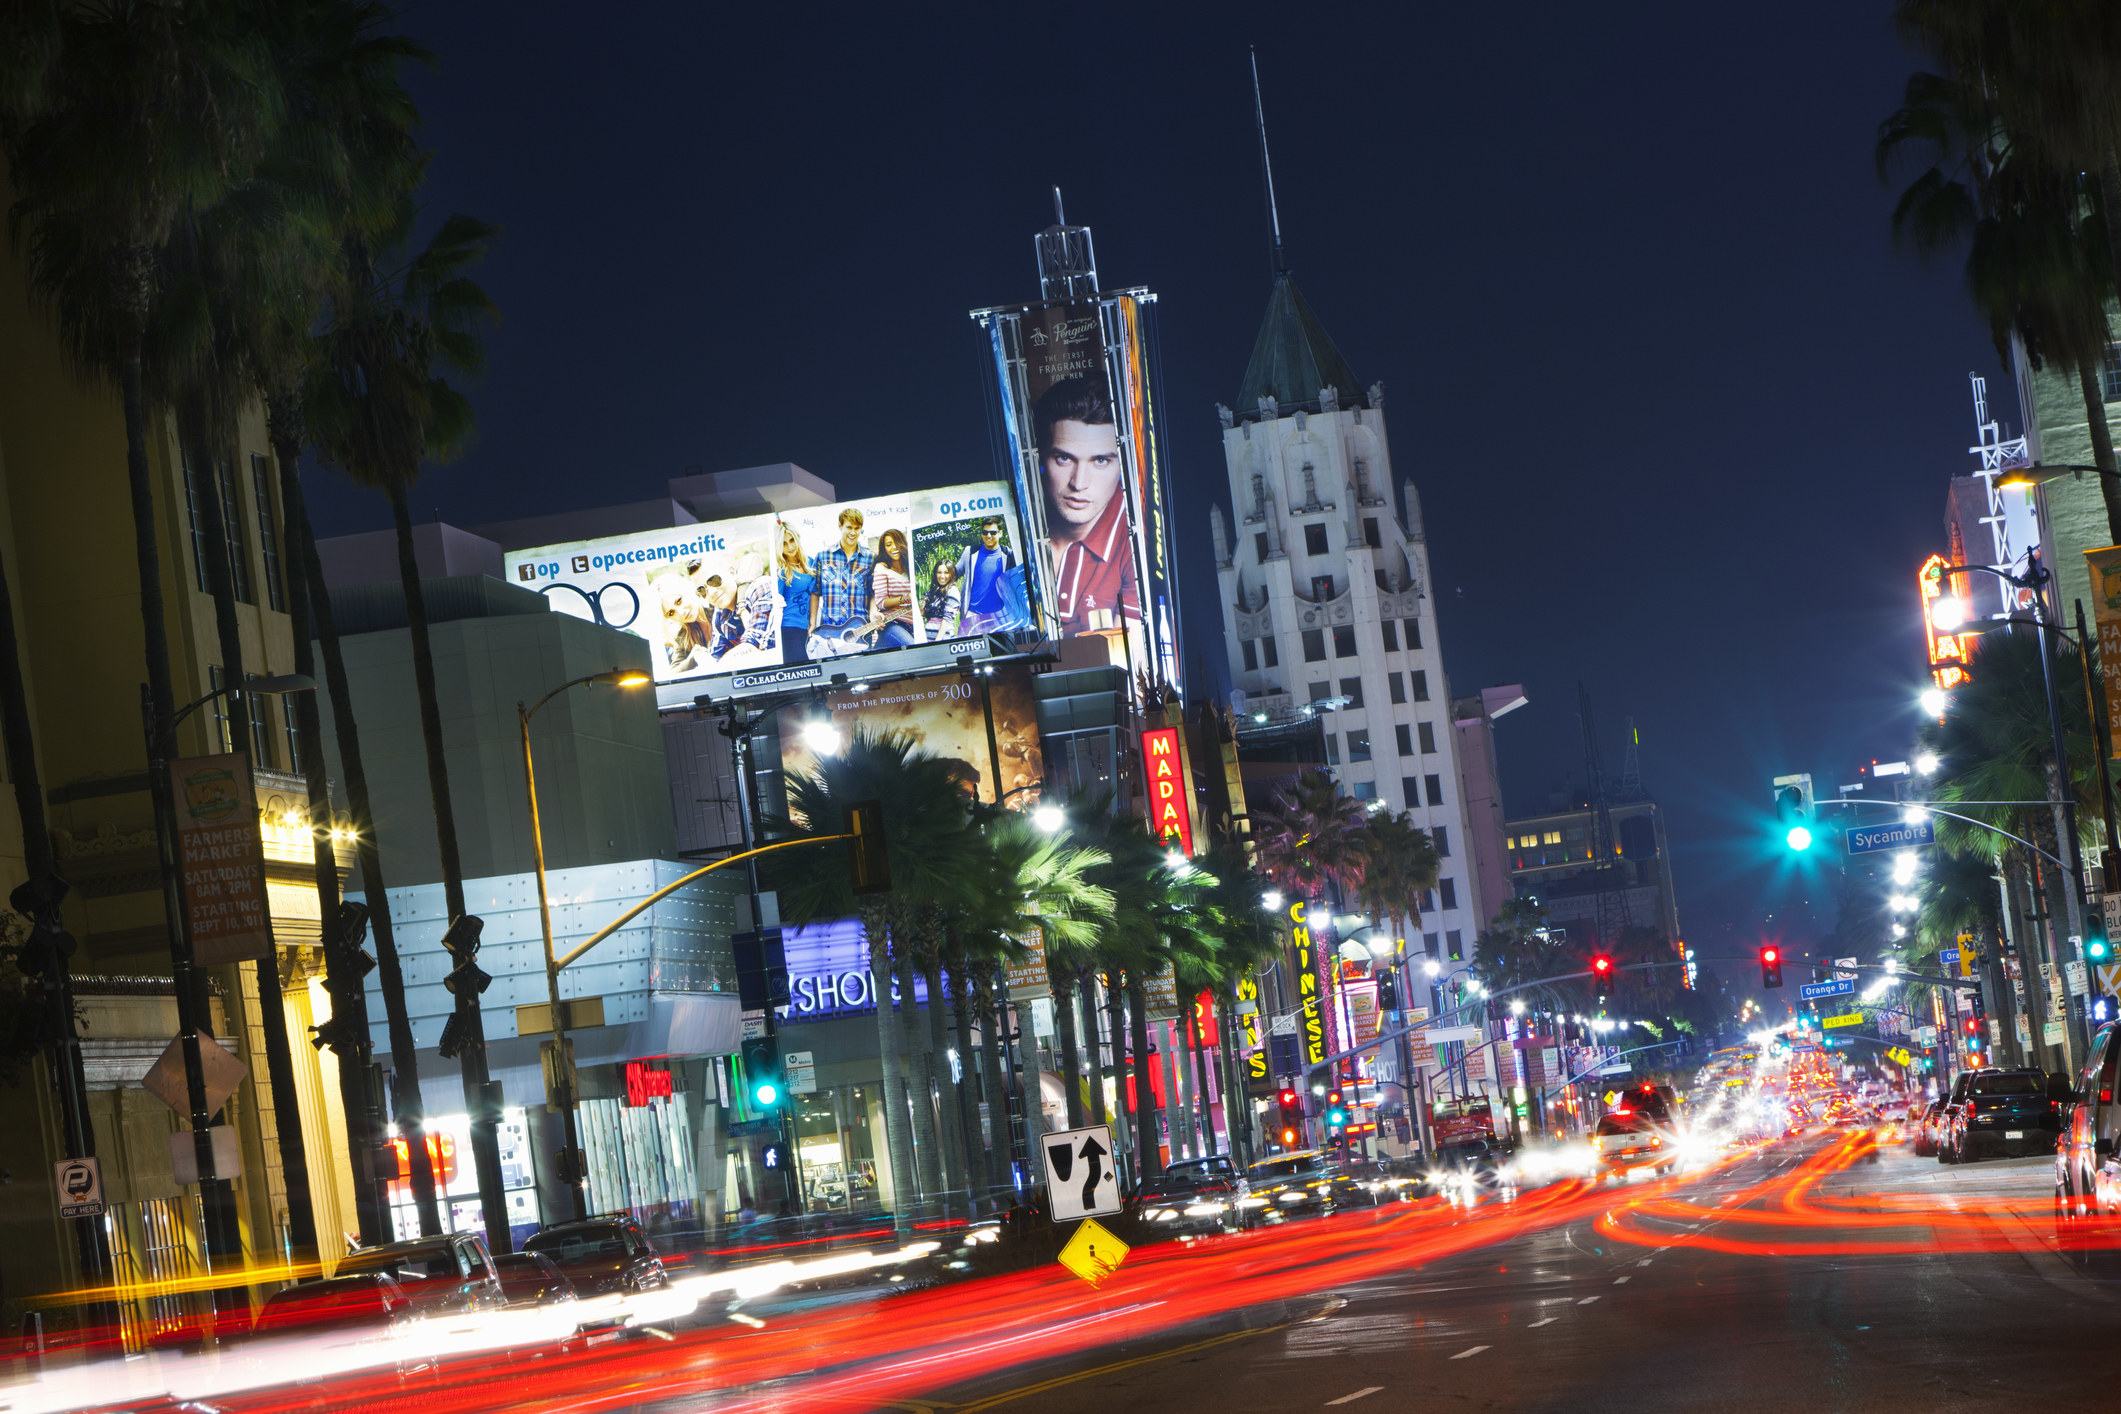 Hollywood boulevard at night